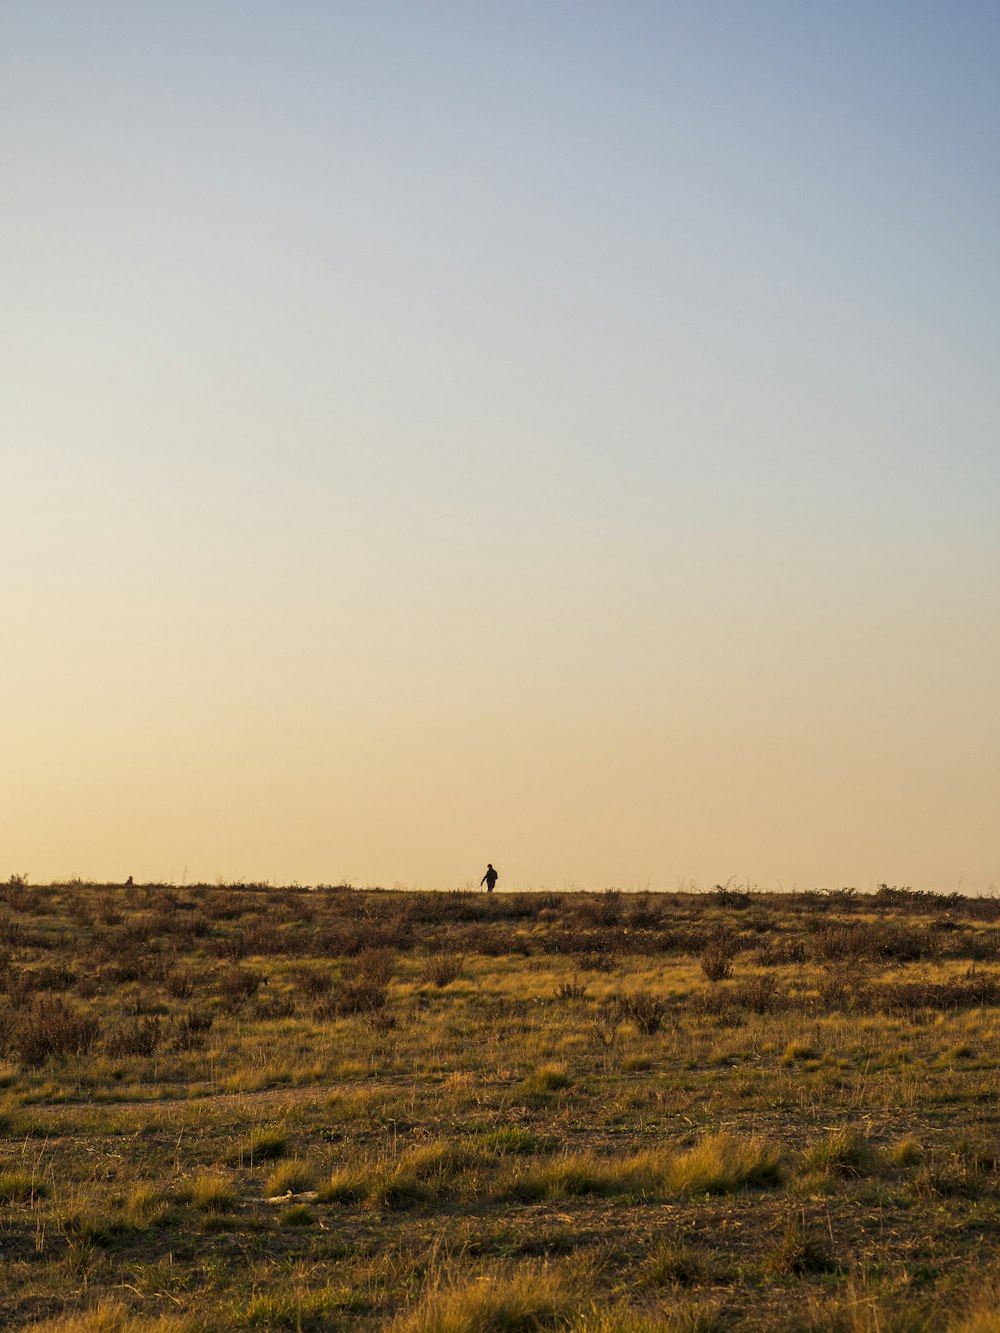 孤独な人が野原で凧を飛ばしている